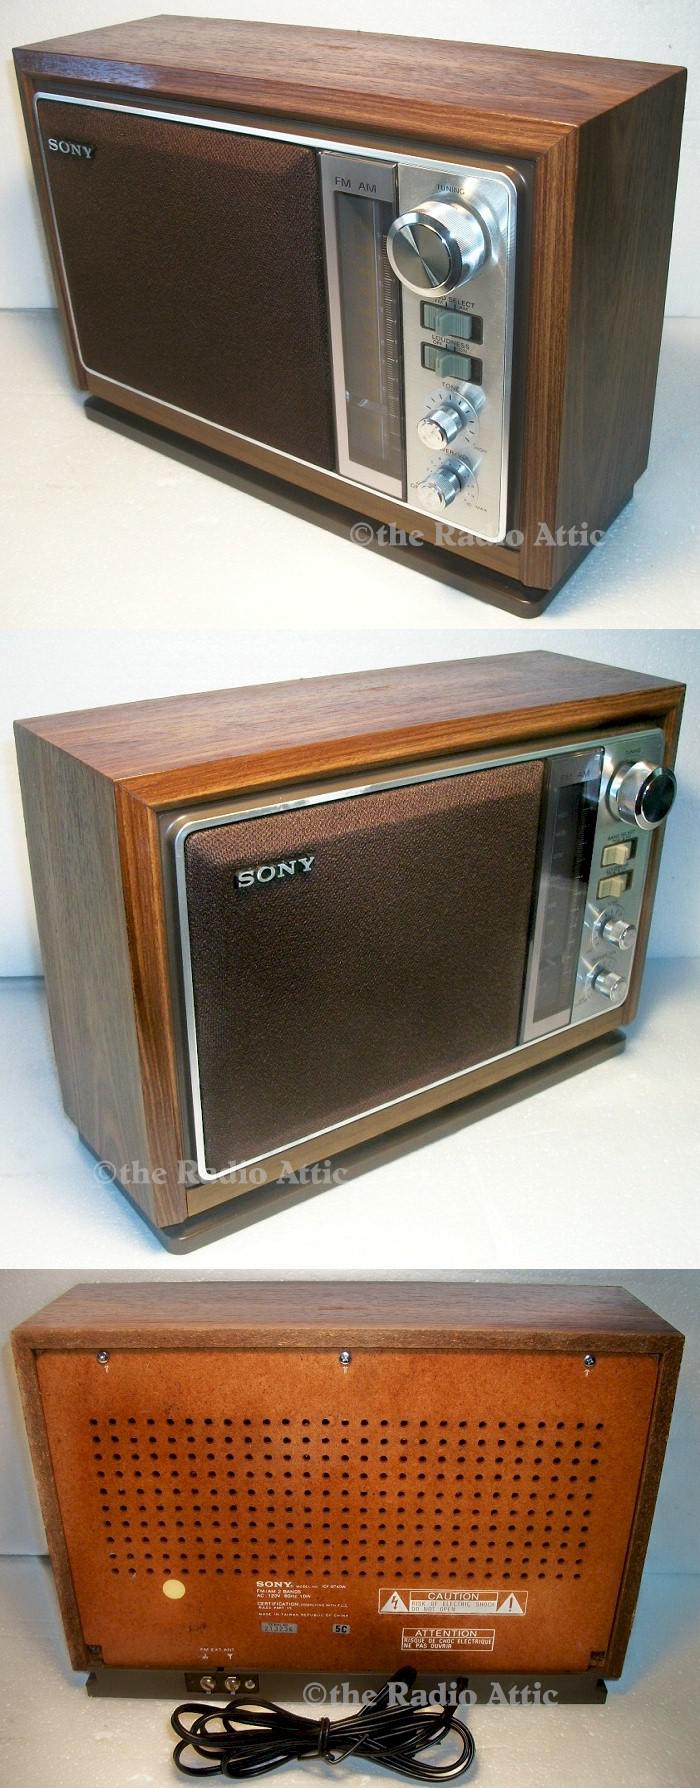 Sony ICF-9740W (1980)